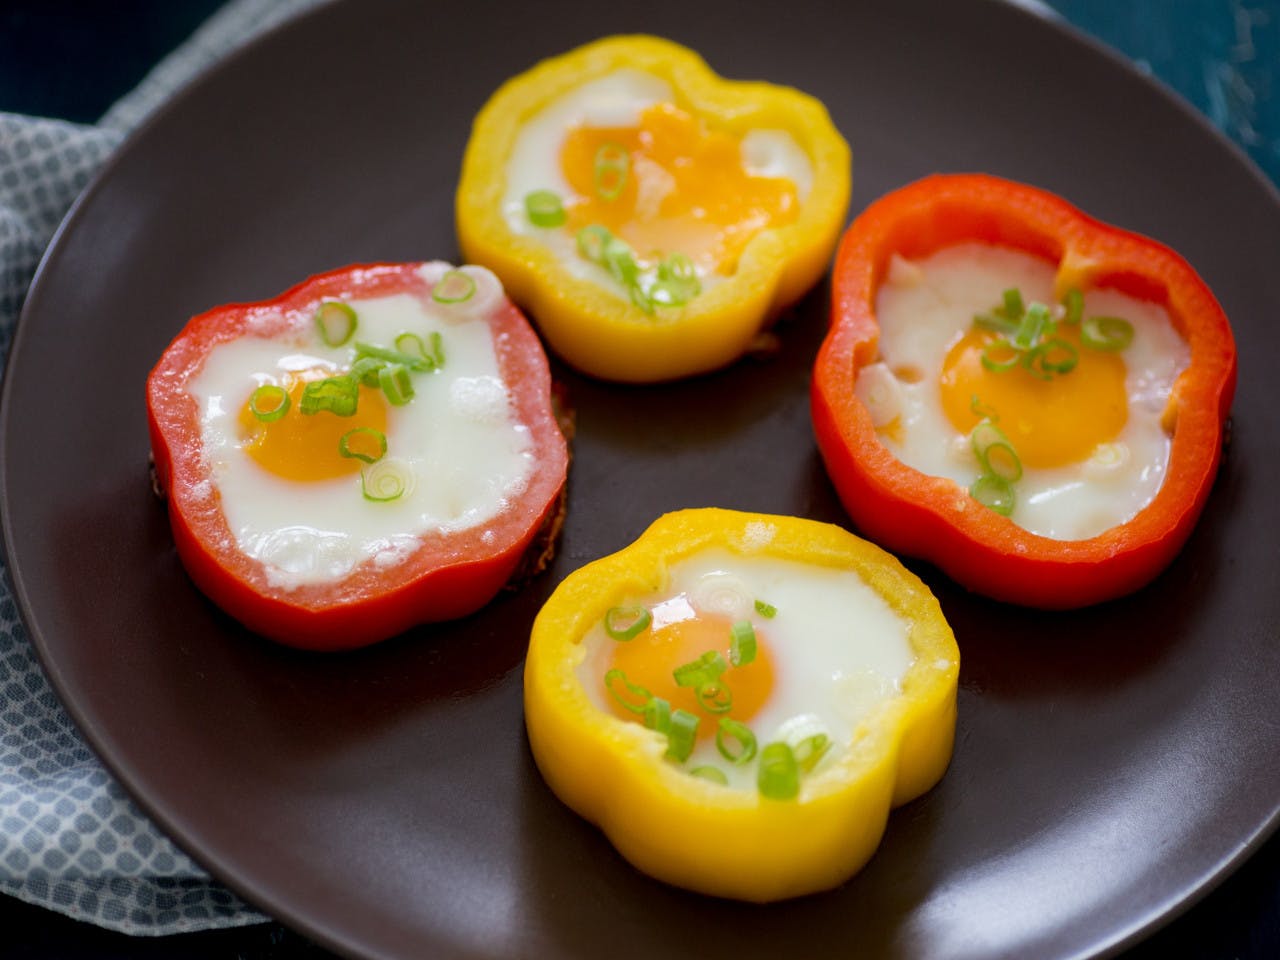 Bell pepper rings with egg